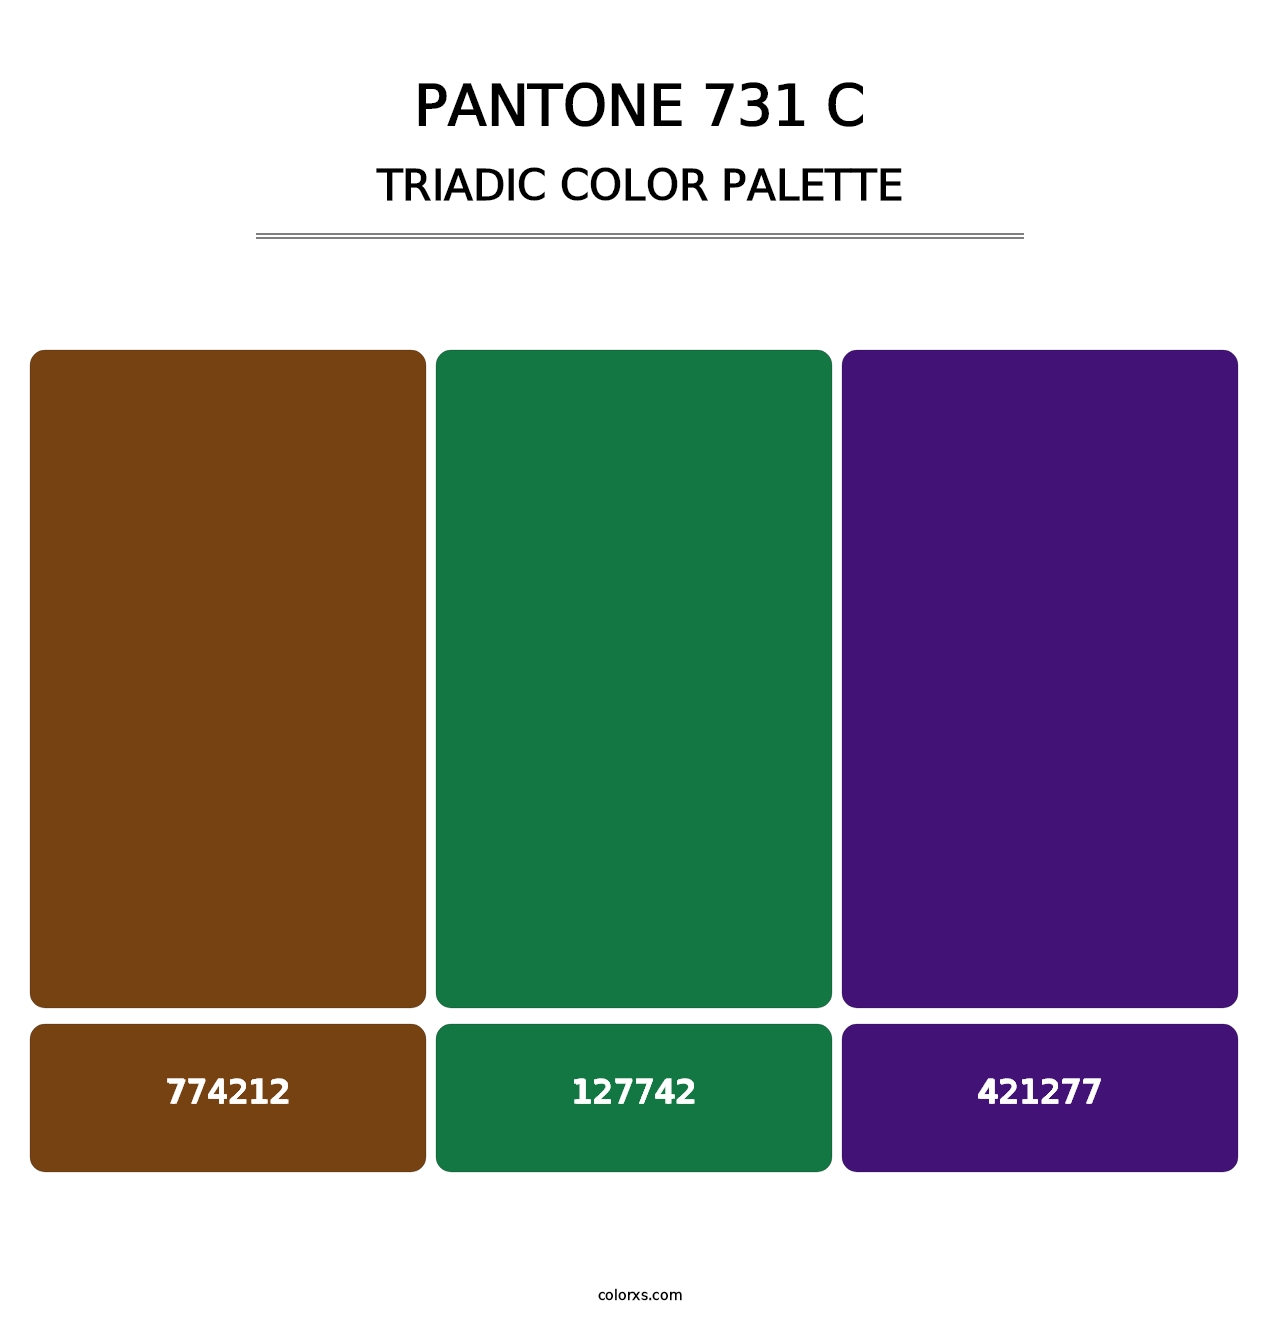 PANTONE 731 C - Triadic Color Palette